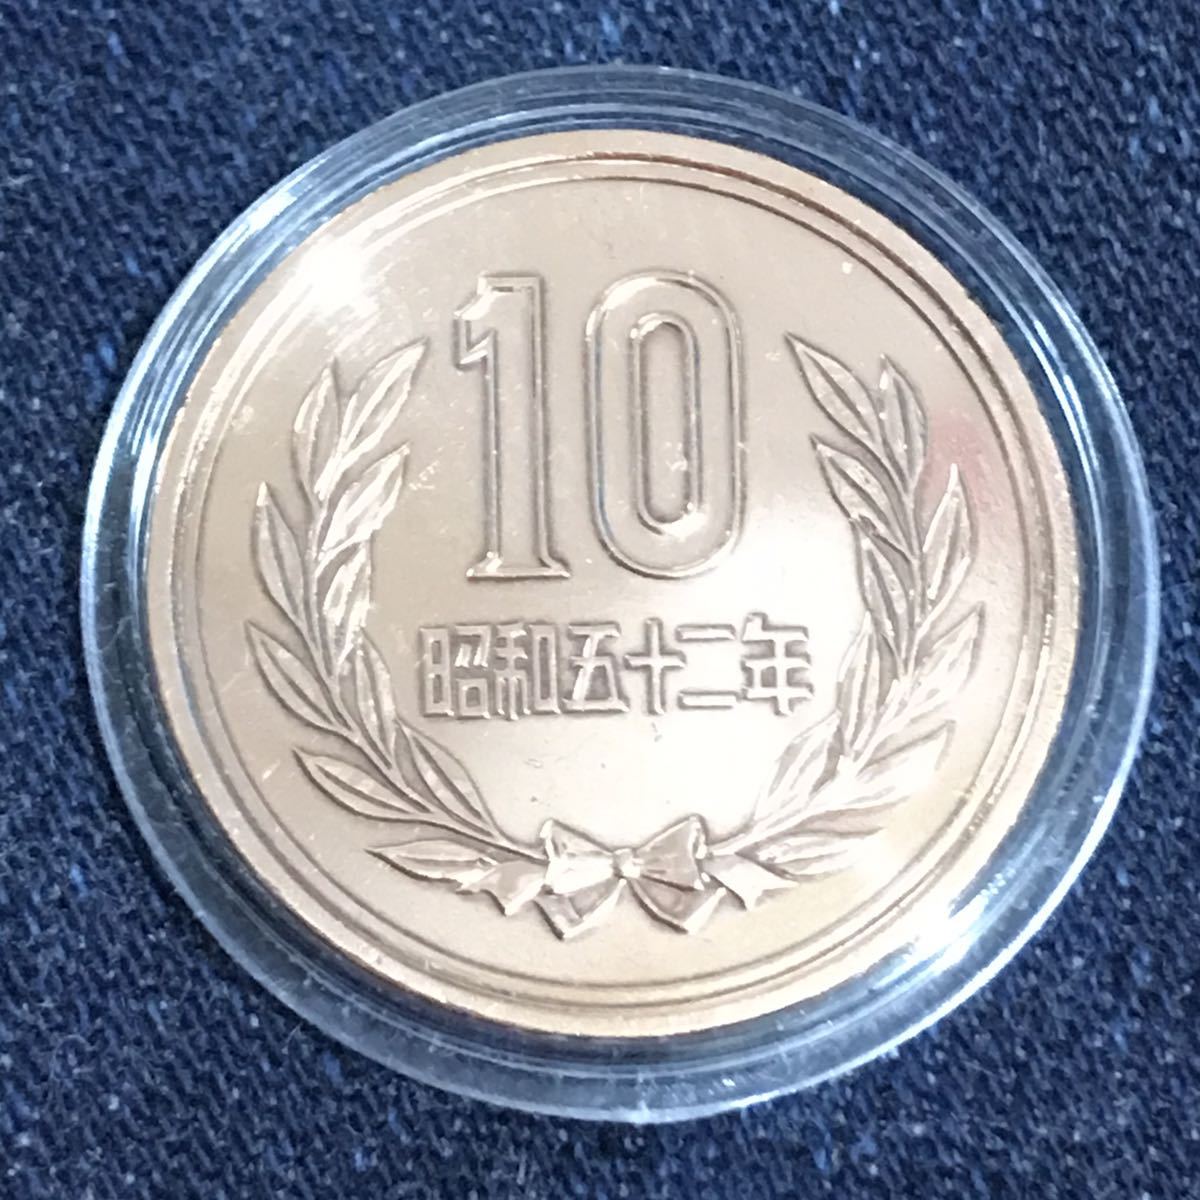 1977/ 昭和52年#10円硬貨 ミントセット出し 未完 #viproomtokyo #10円青銅貨 v-4.9up #mint #mintbureau #10円貨幣 #昭和五十ニ年 #十円_台紙は、1枚 付き。銘板1枚付き 以上。